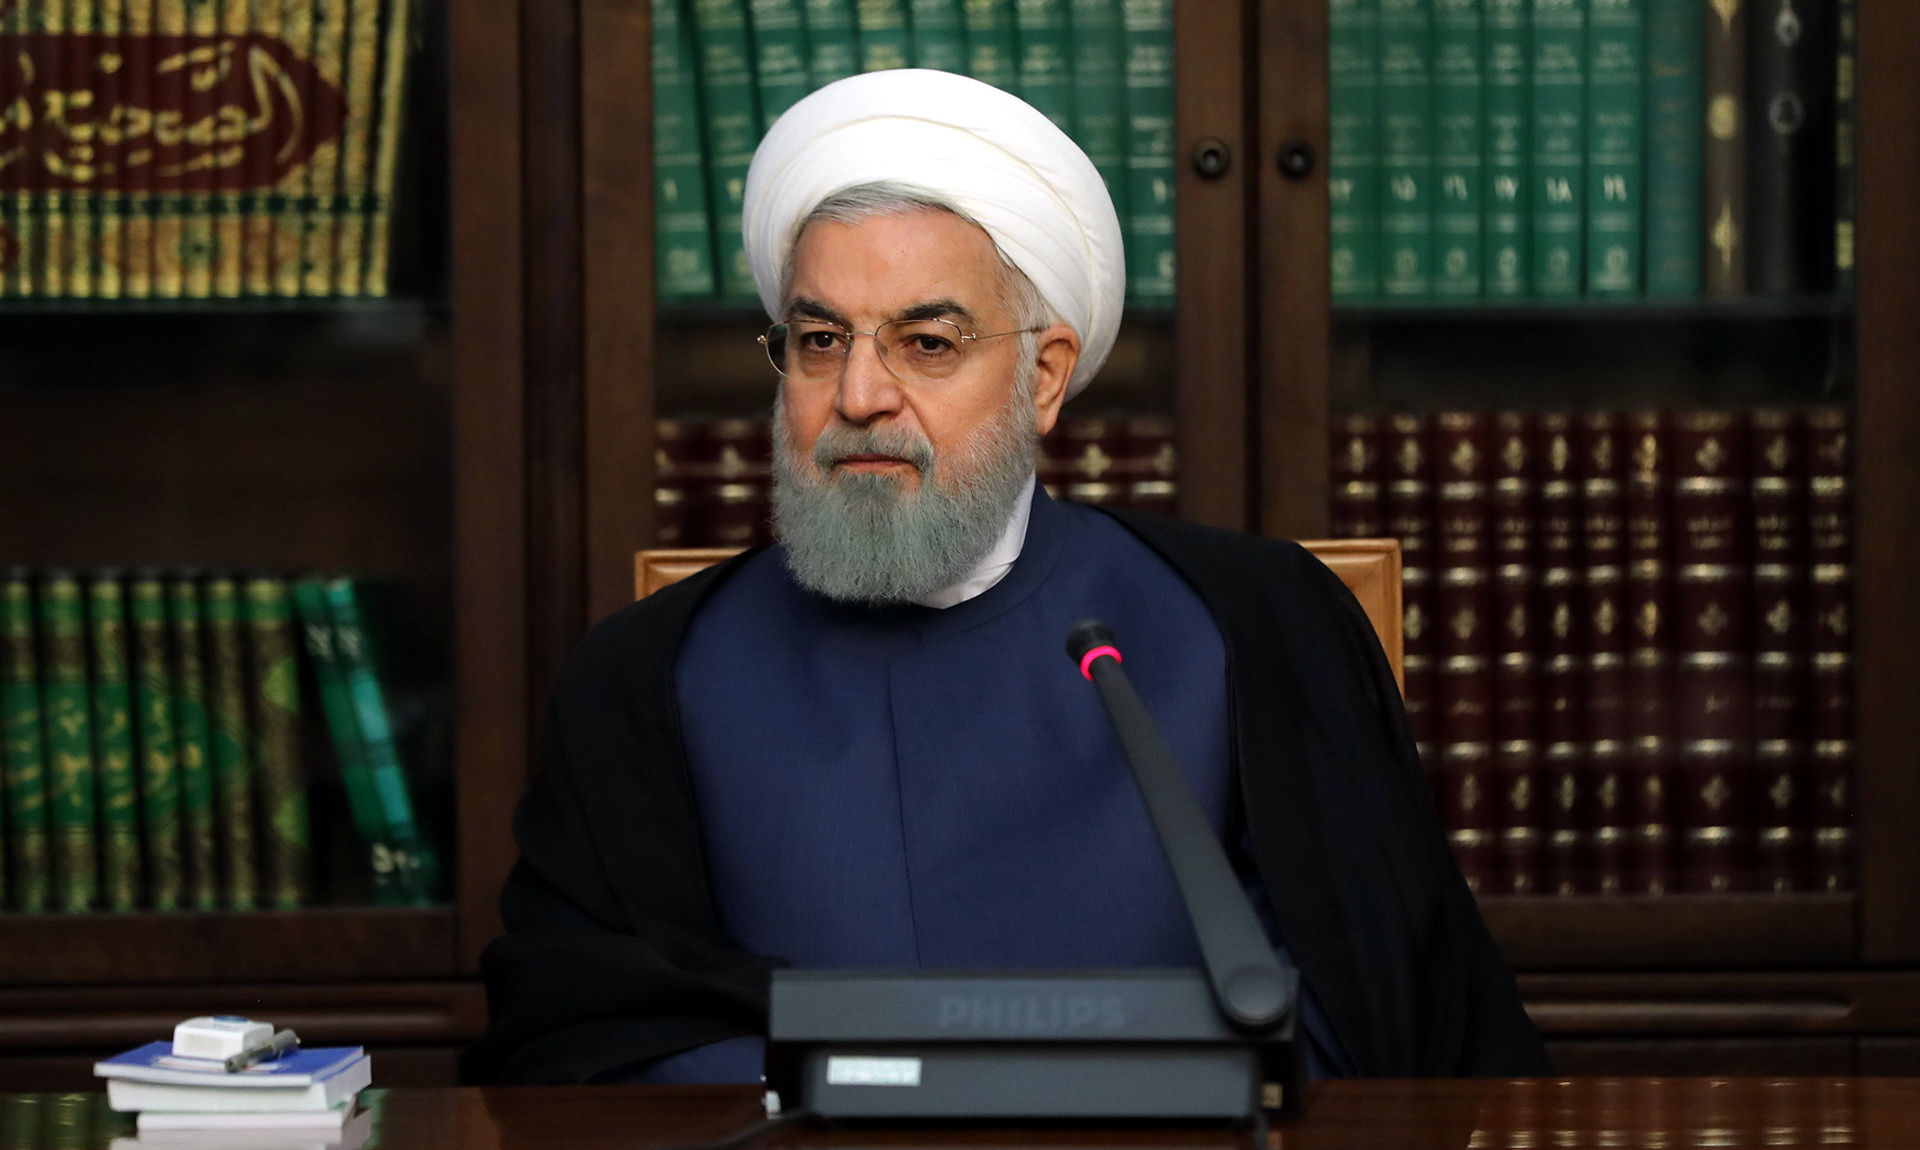 روحانی: این دولت هرگز برای اداره کشور در پی استقراض از بانک مرکزی نشد